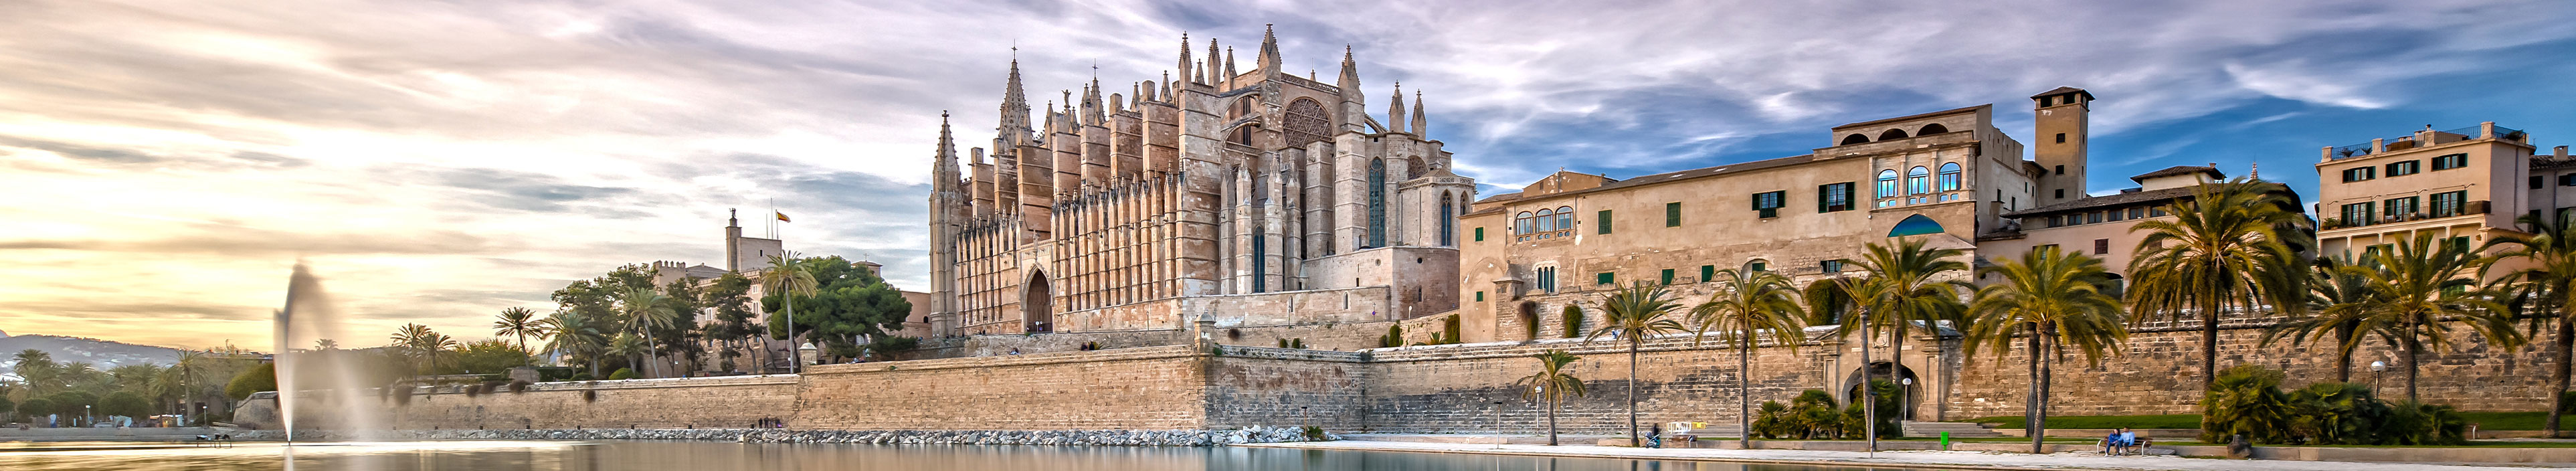 Urlaub auf Mallorca. Aussennsicht Kathedrale von Palma, die im Wasser reflektiert.